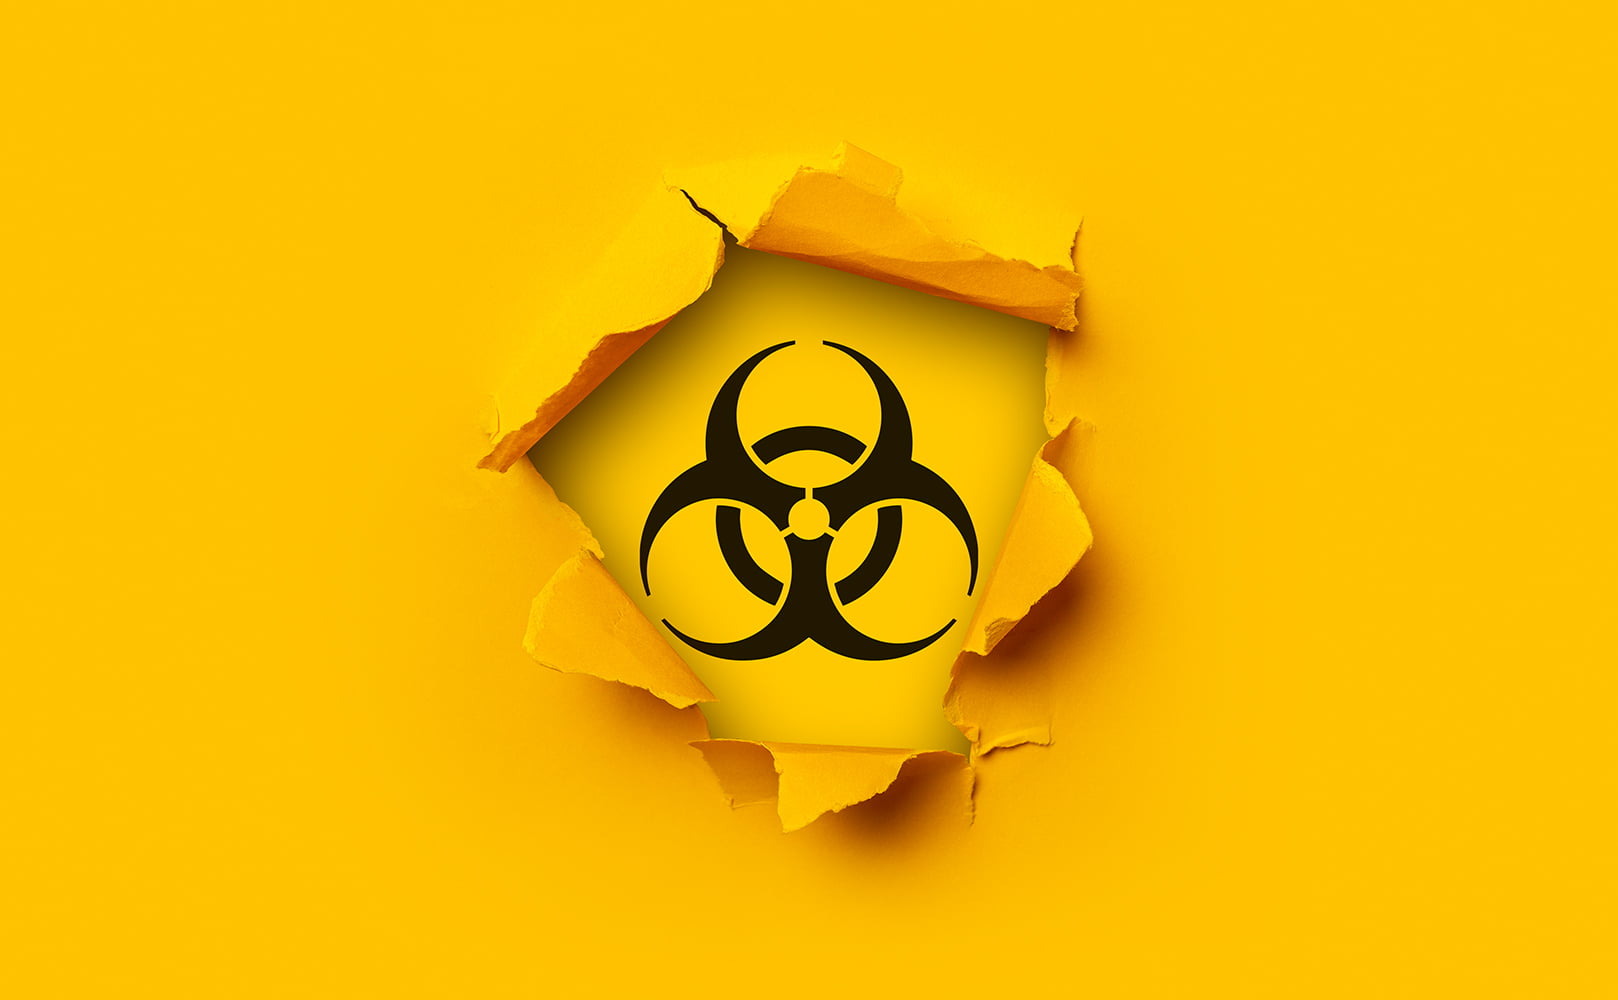 radioactivity warning sign